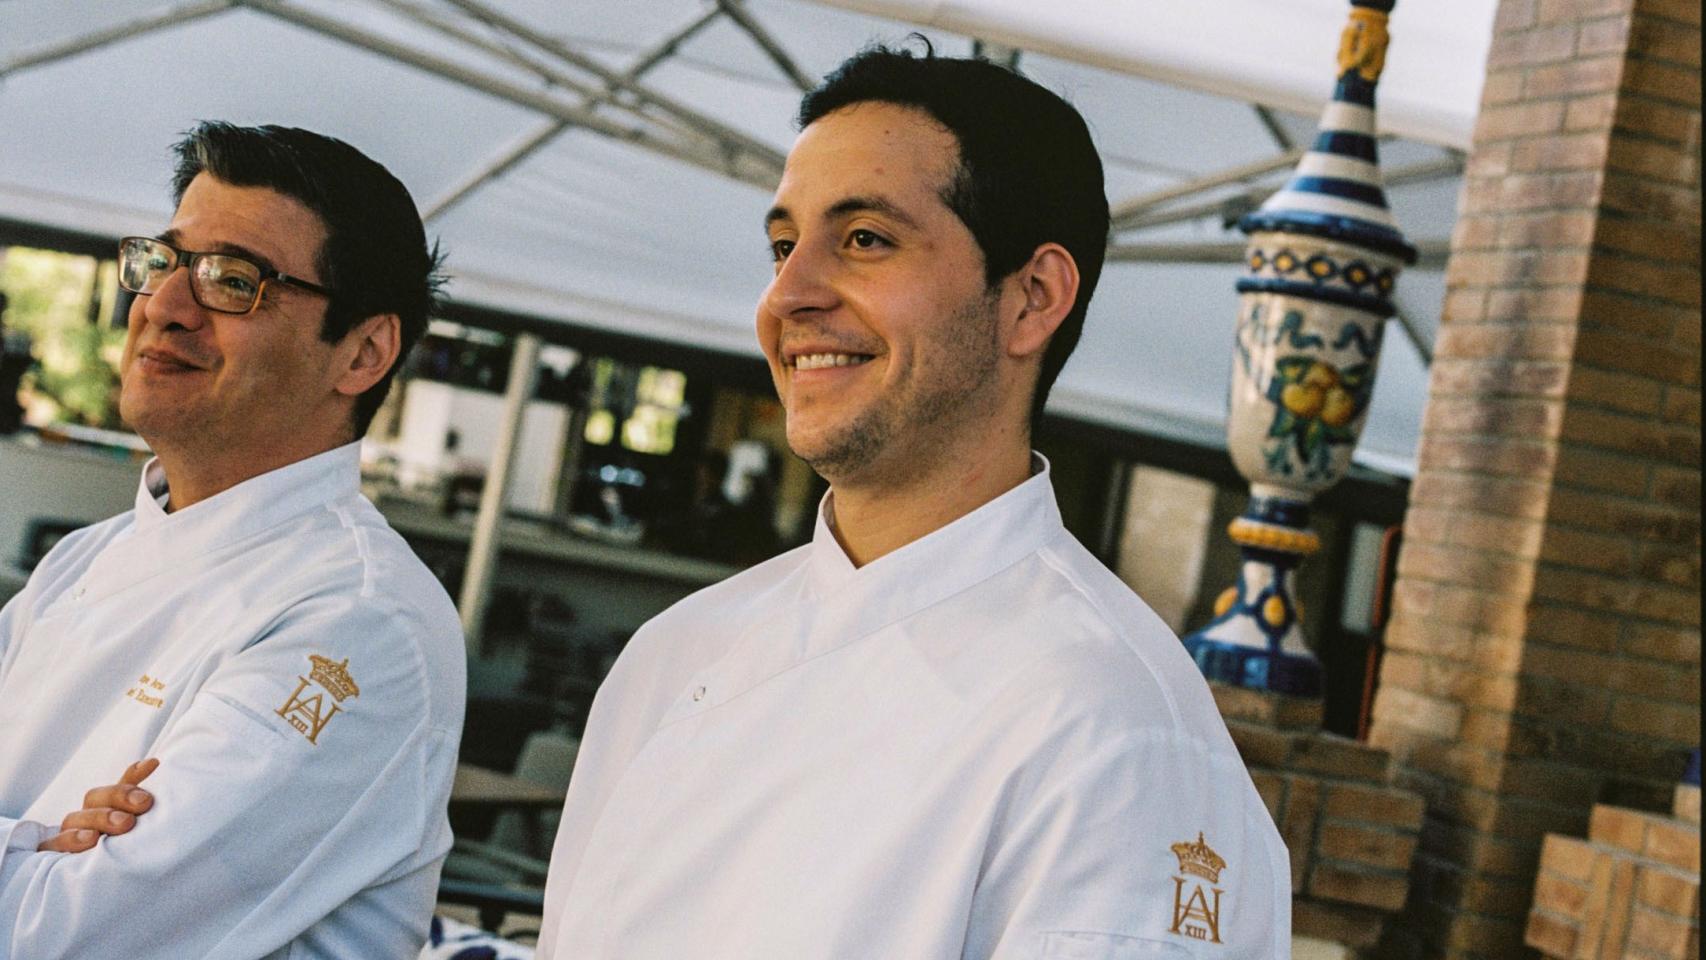 El nuevo chef ejecutivo del hotel, Felipe Arango, y el cocinero Antonio Carrillo Ramírez.